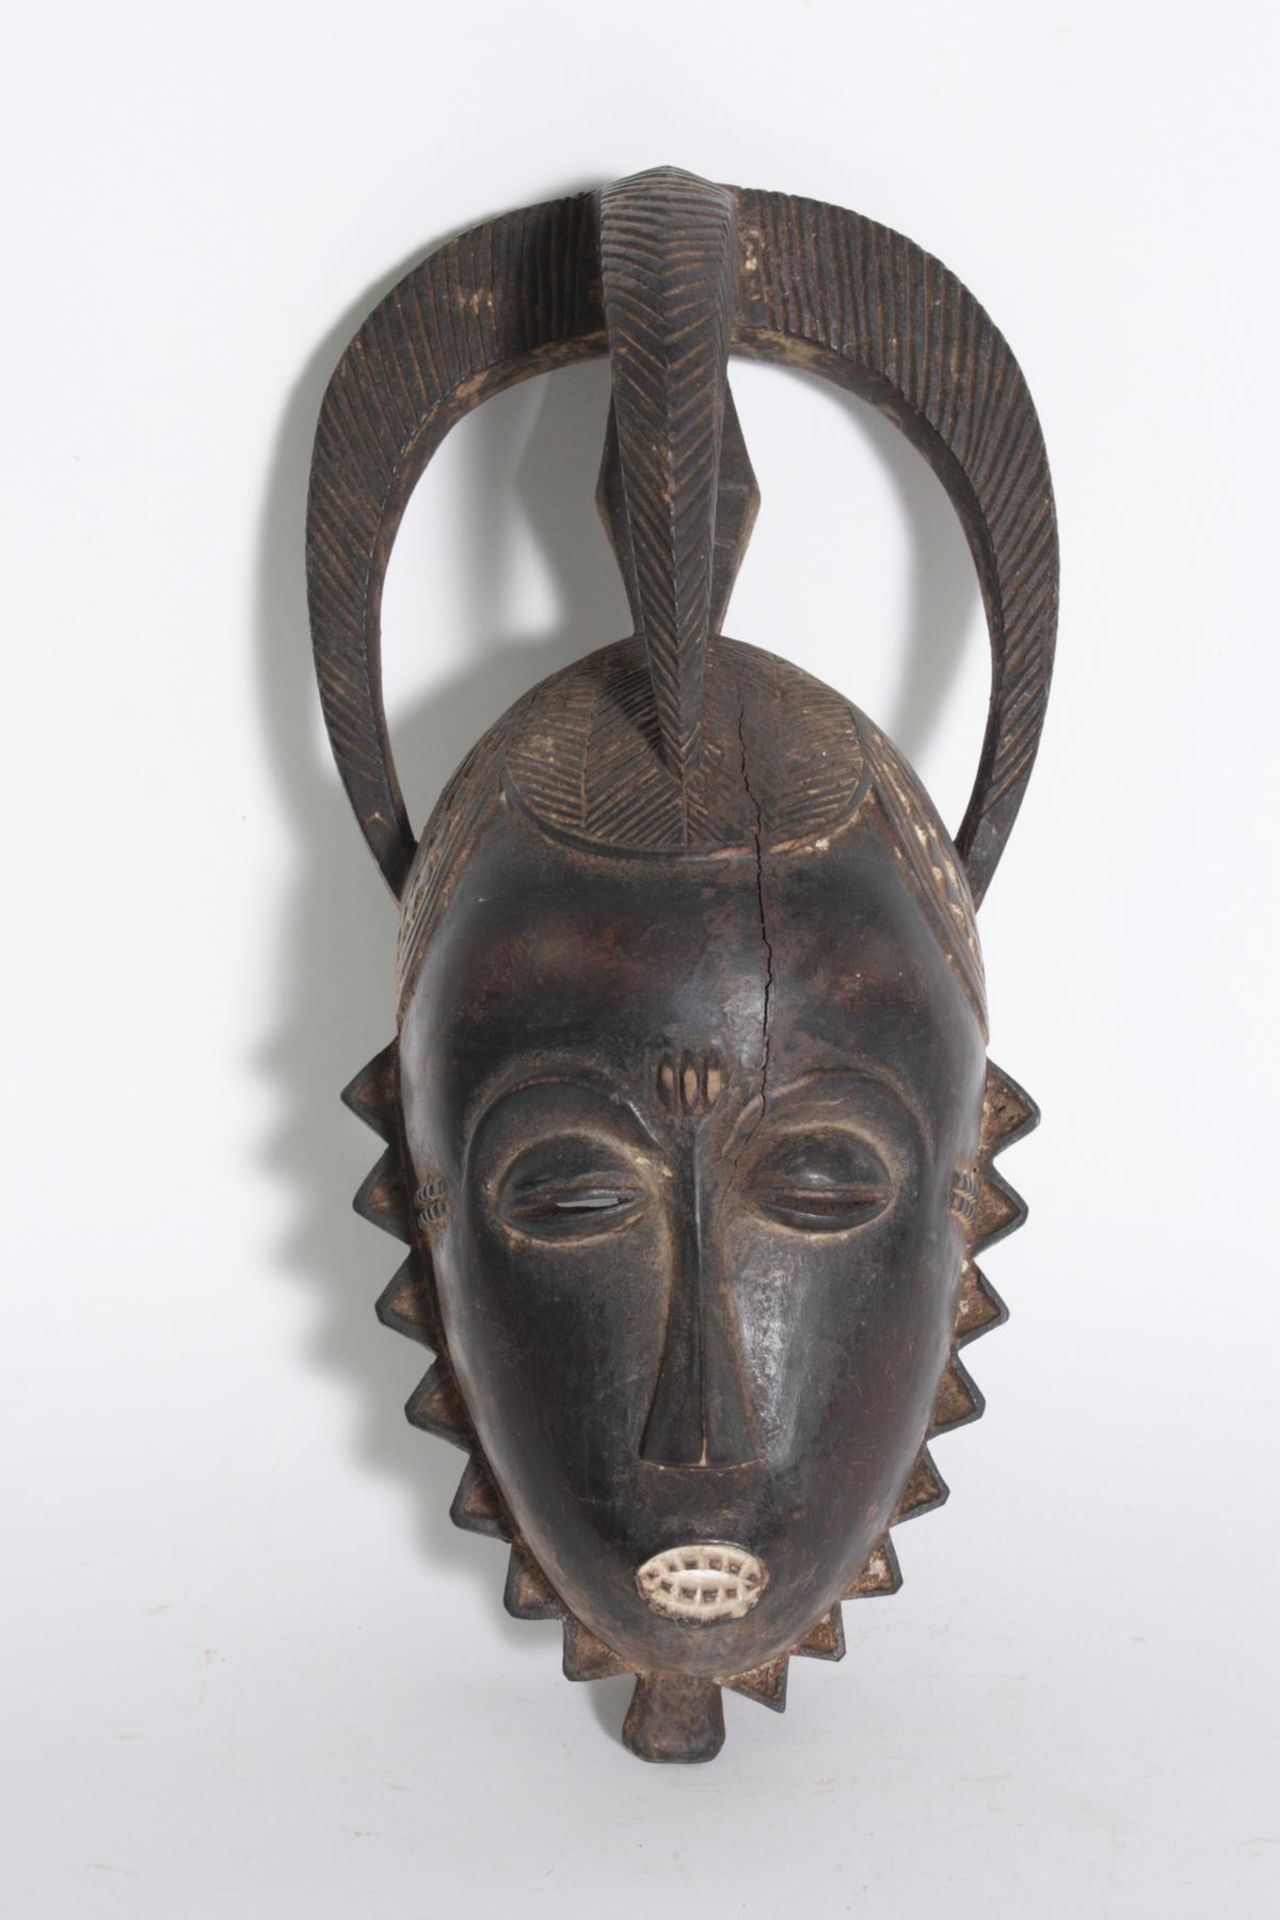 Yaure Maske, Elfenbeinküste, 1. Hälfte 20. Jh.Holz, geschnitzt, dunkelbraune Patina, Gesicht mit